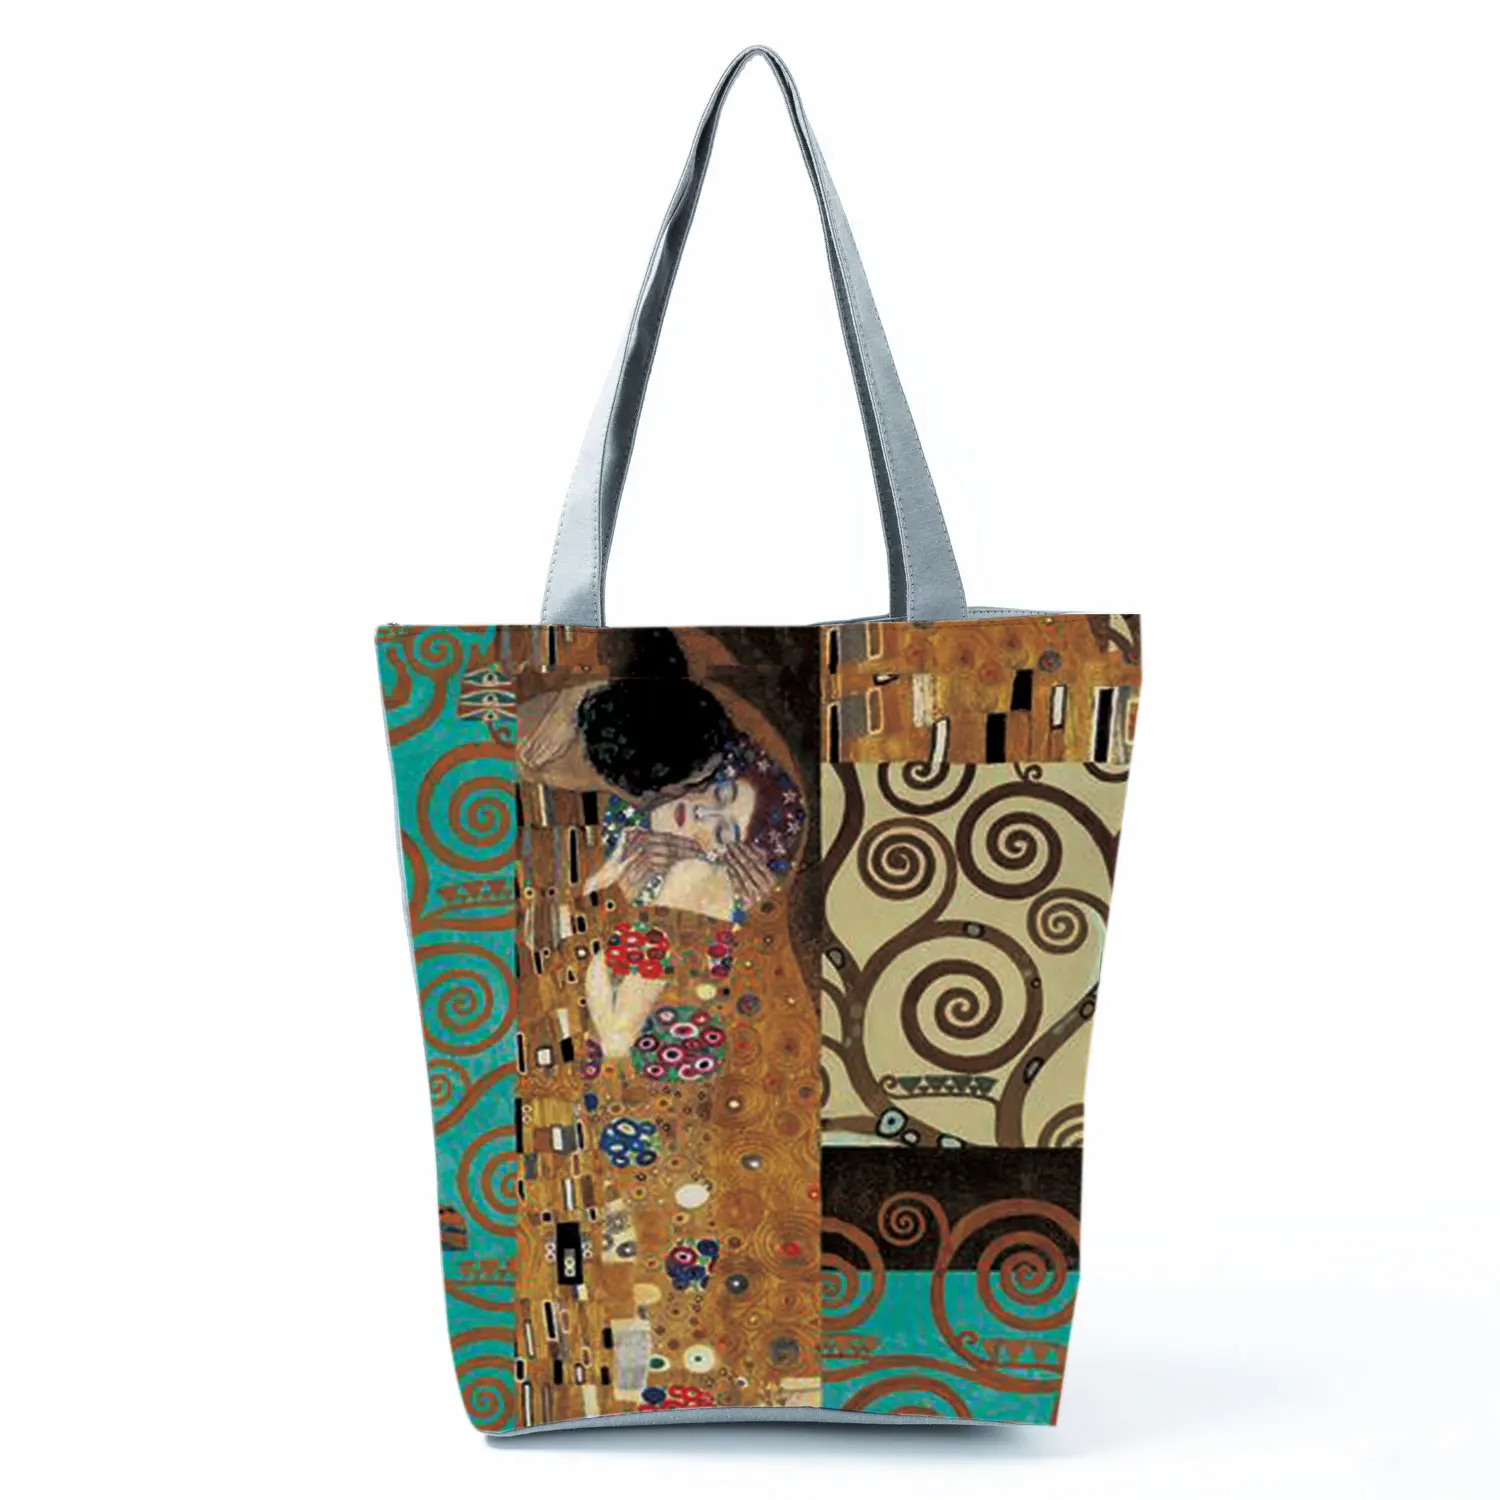 New Van Gogh Oil Painting Canvas Tote Bag Retro Art Fashion Travel Bags Women Leisure Eco Shopping High Quality Foldable Handbag 